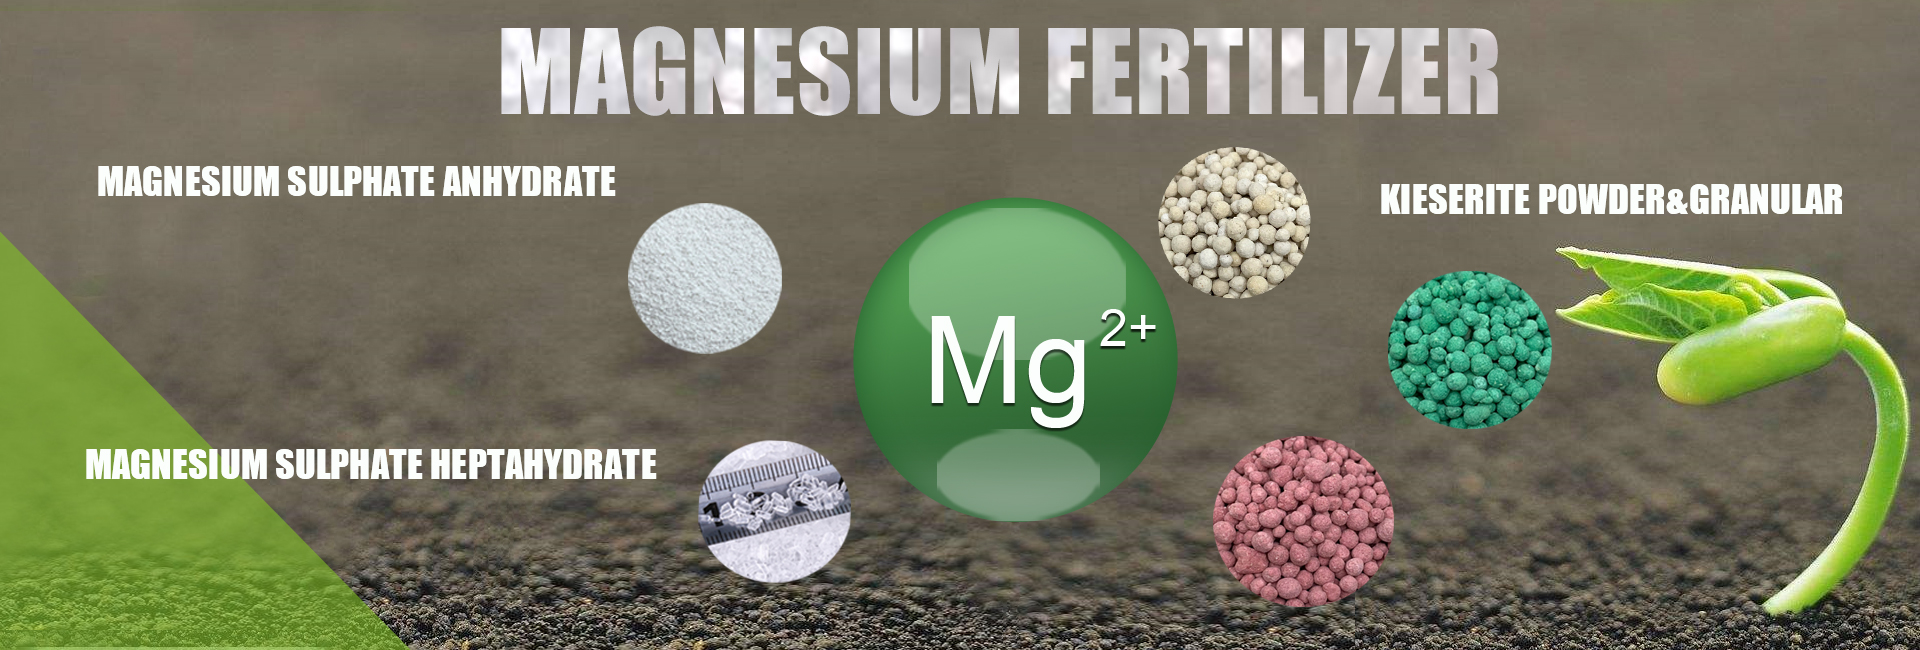 Magnesium sulfate 